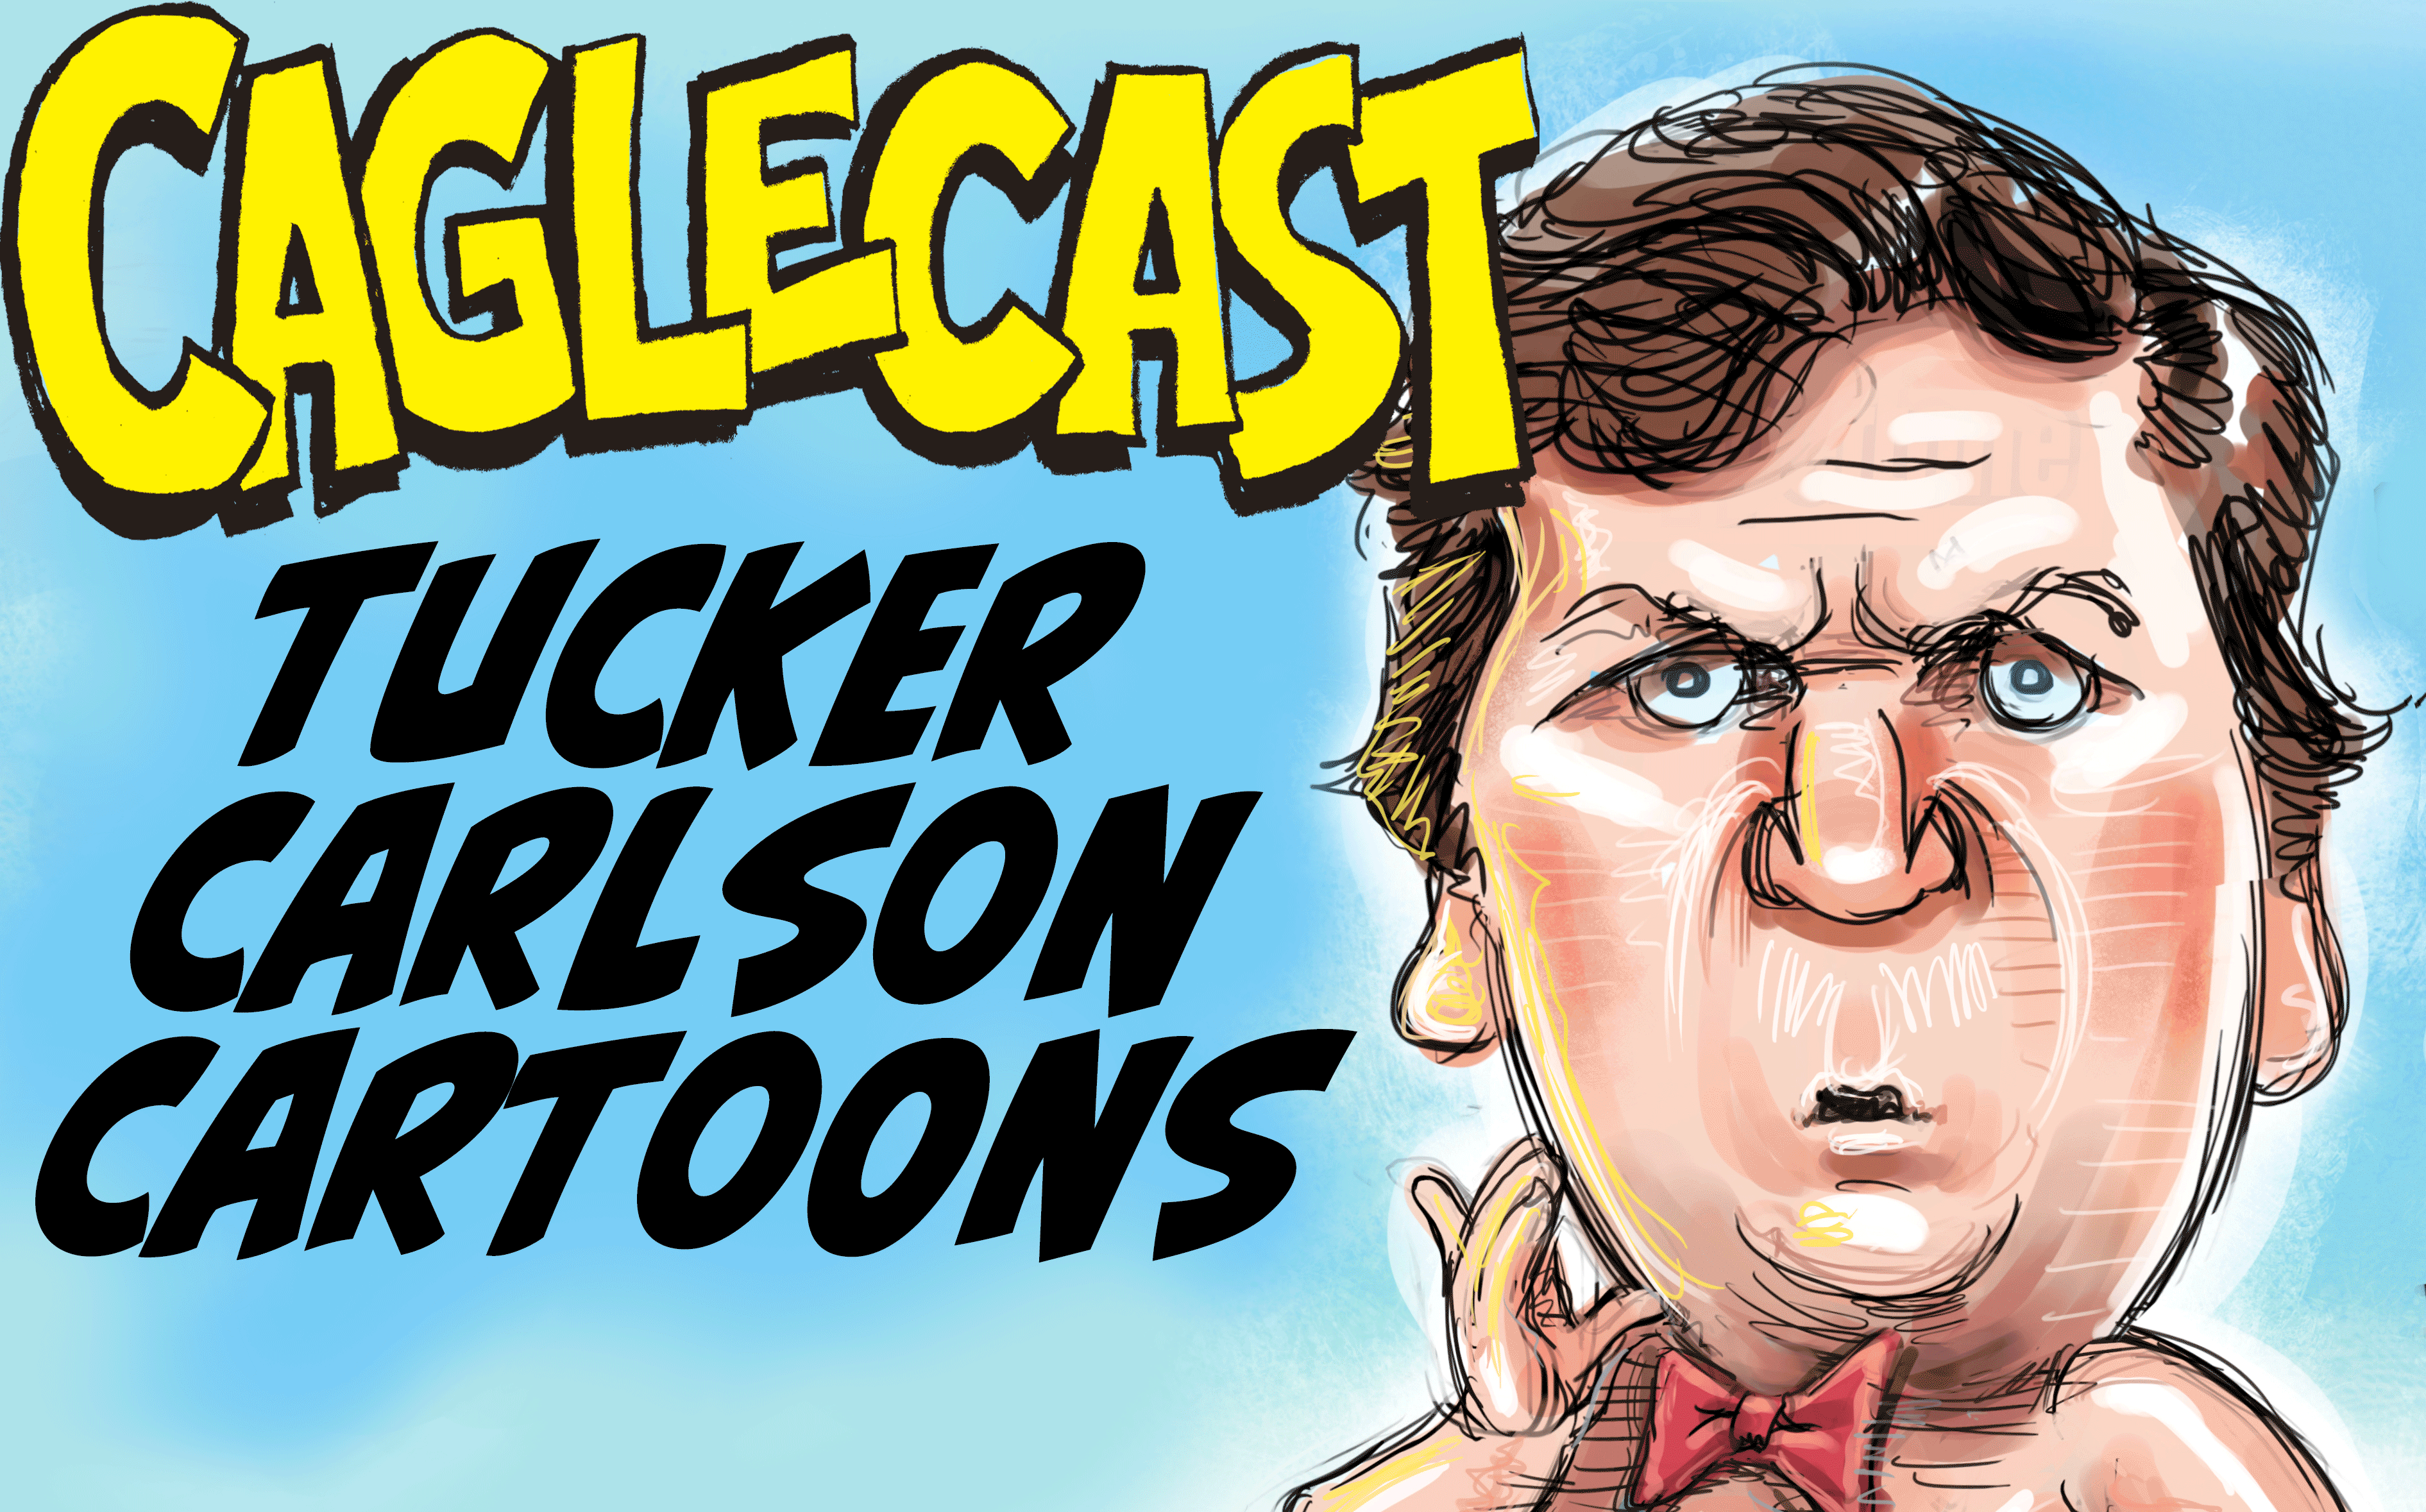 Tucker Carlson Cartoons #9 poster